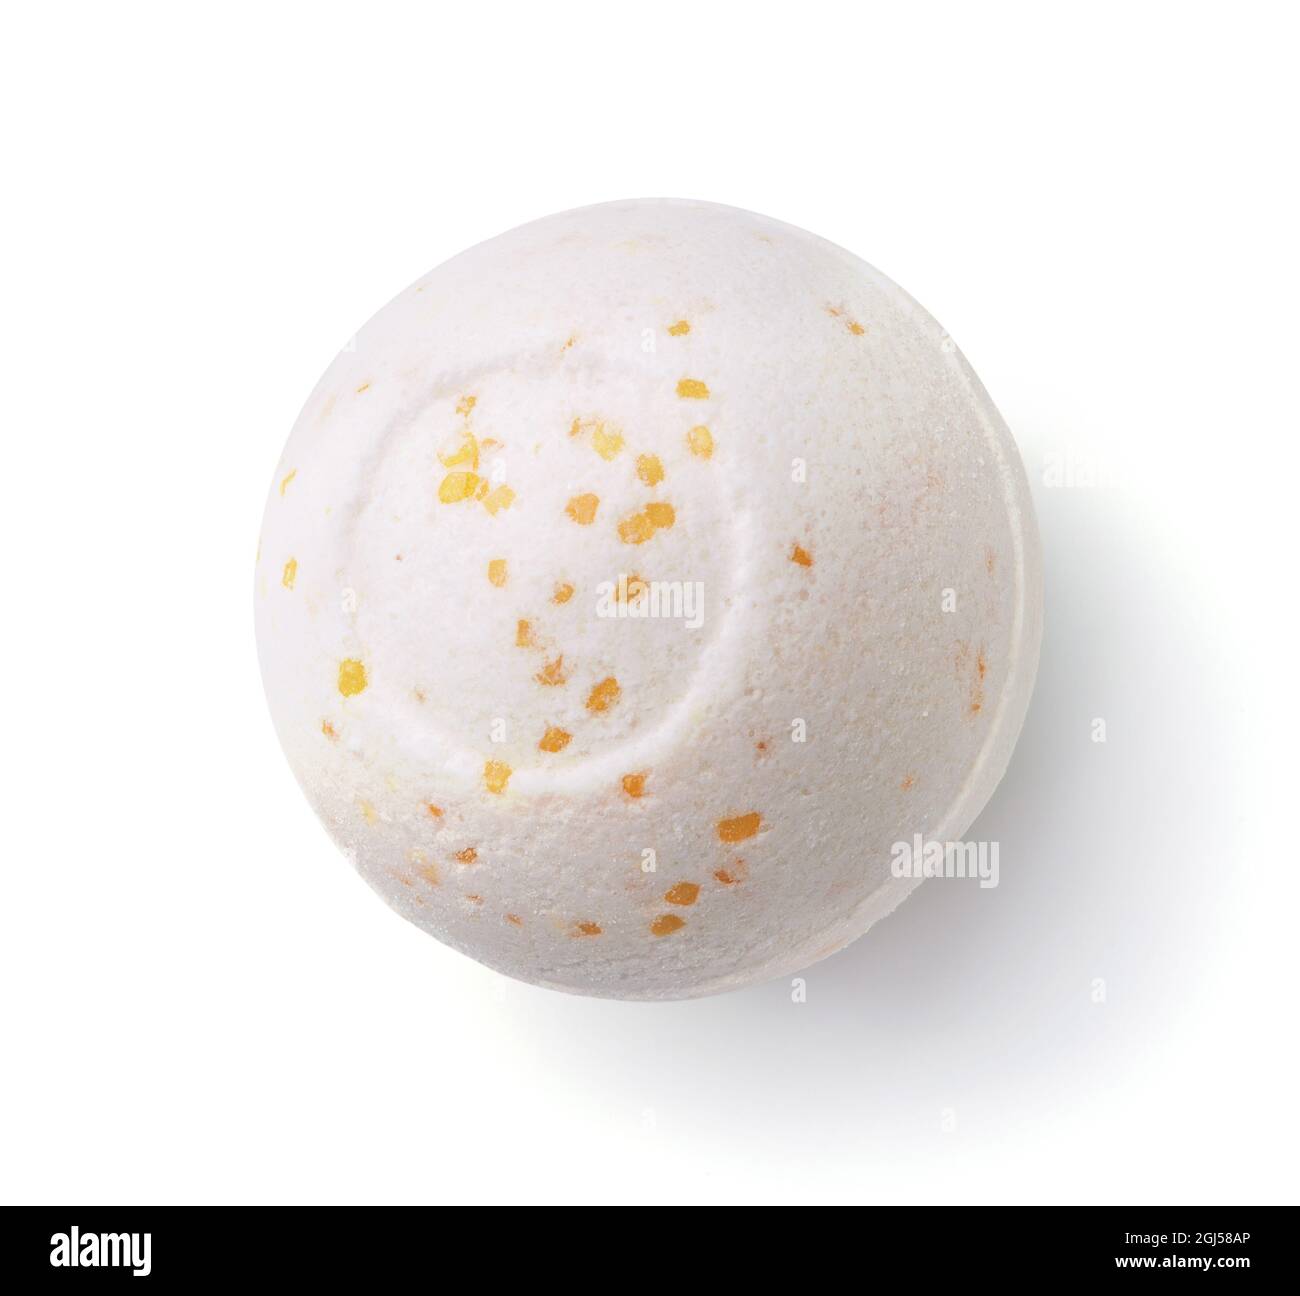 Vue de dessus de la boule de bain bubbling aromatique de melon isolée sur blanc Banque D'Images